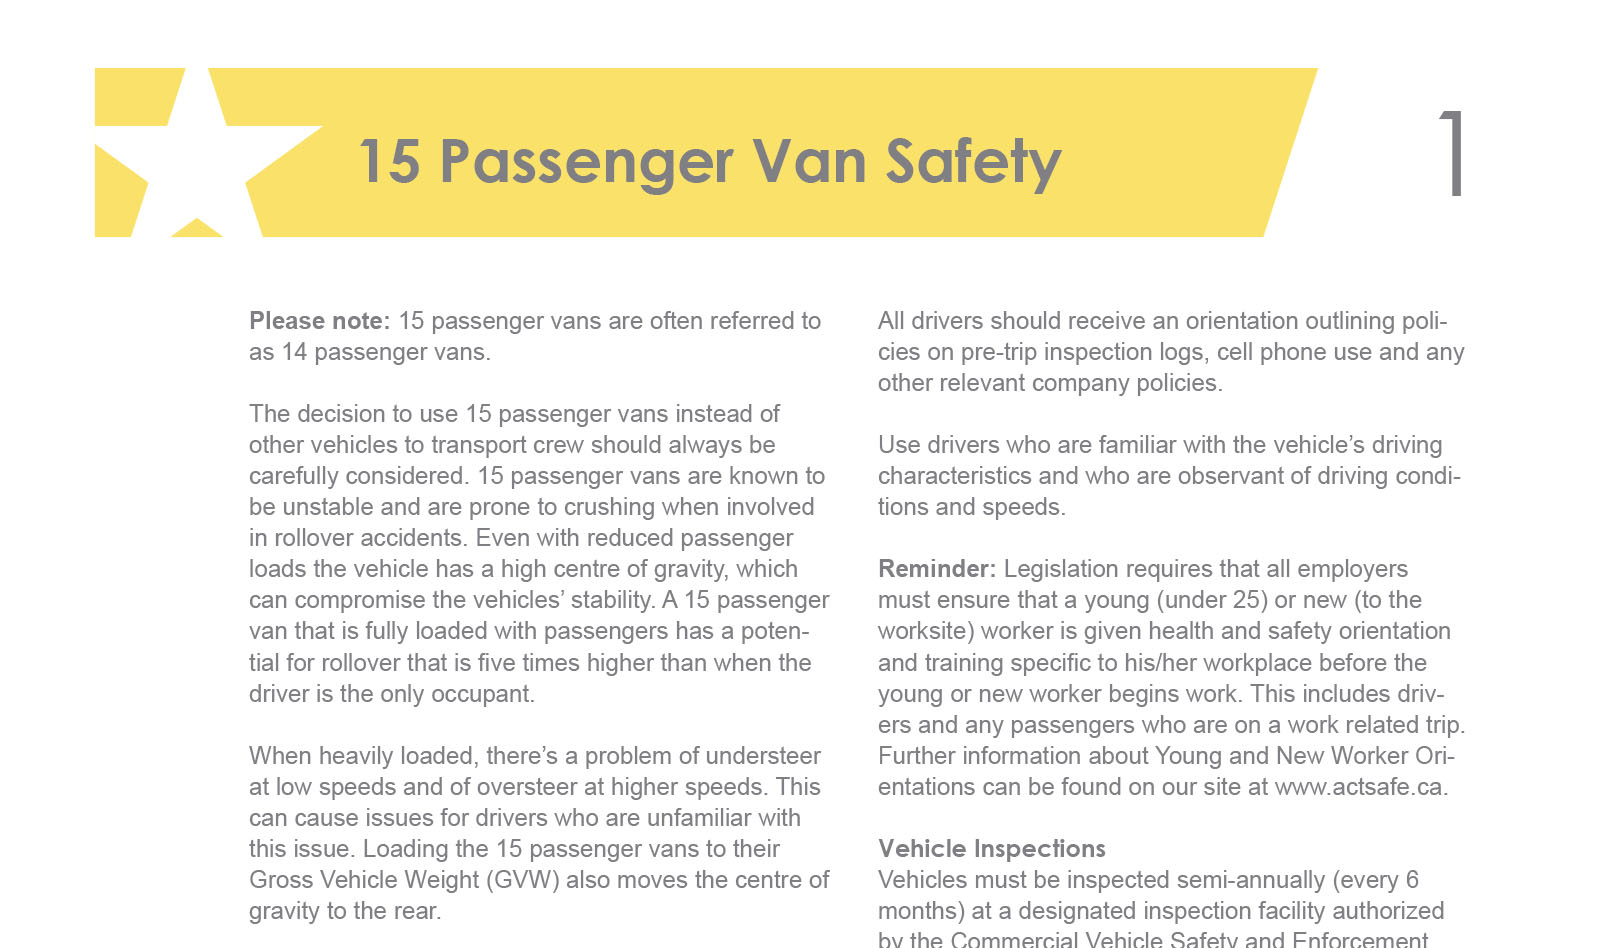 15-Passenger-Van-Safety-Infosheet-PDF